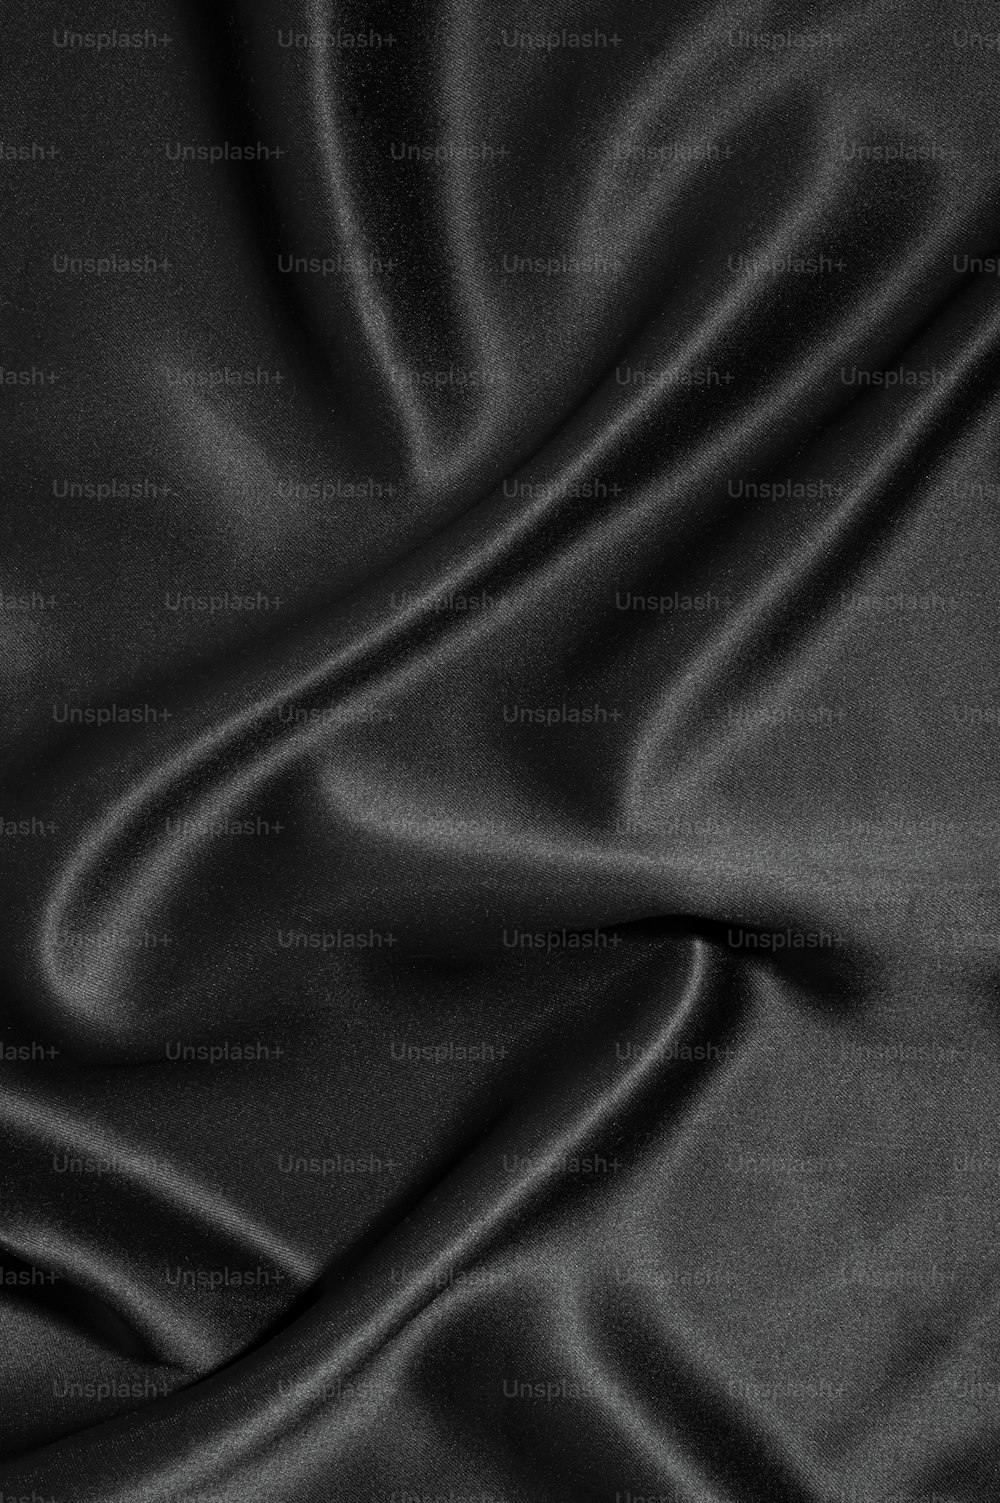 200+] Plain Black Backgrounds